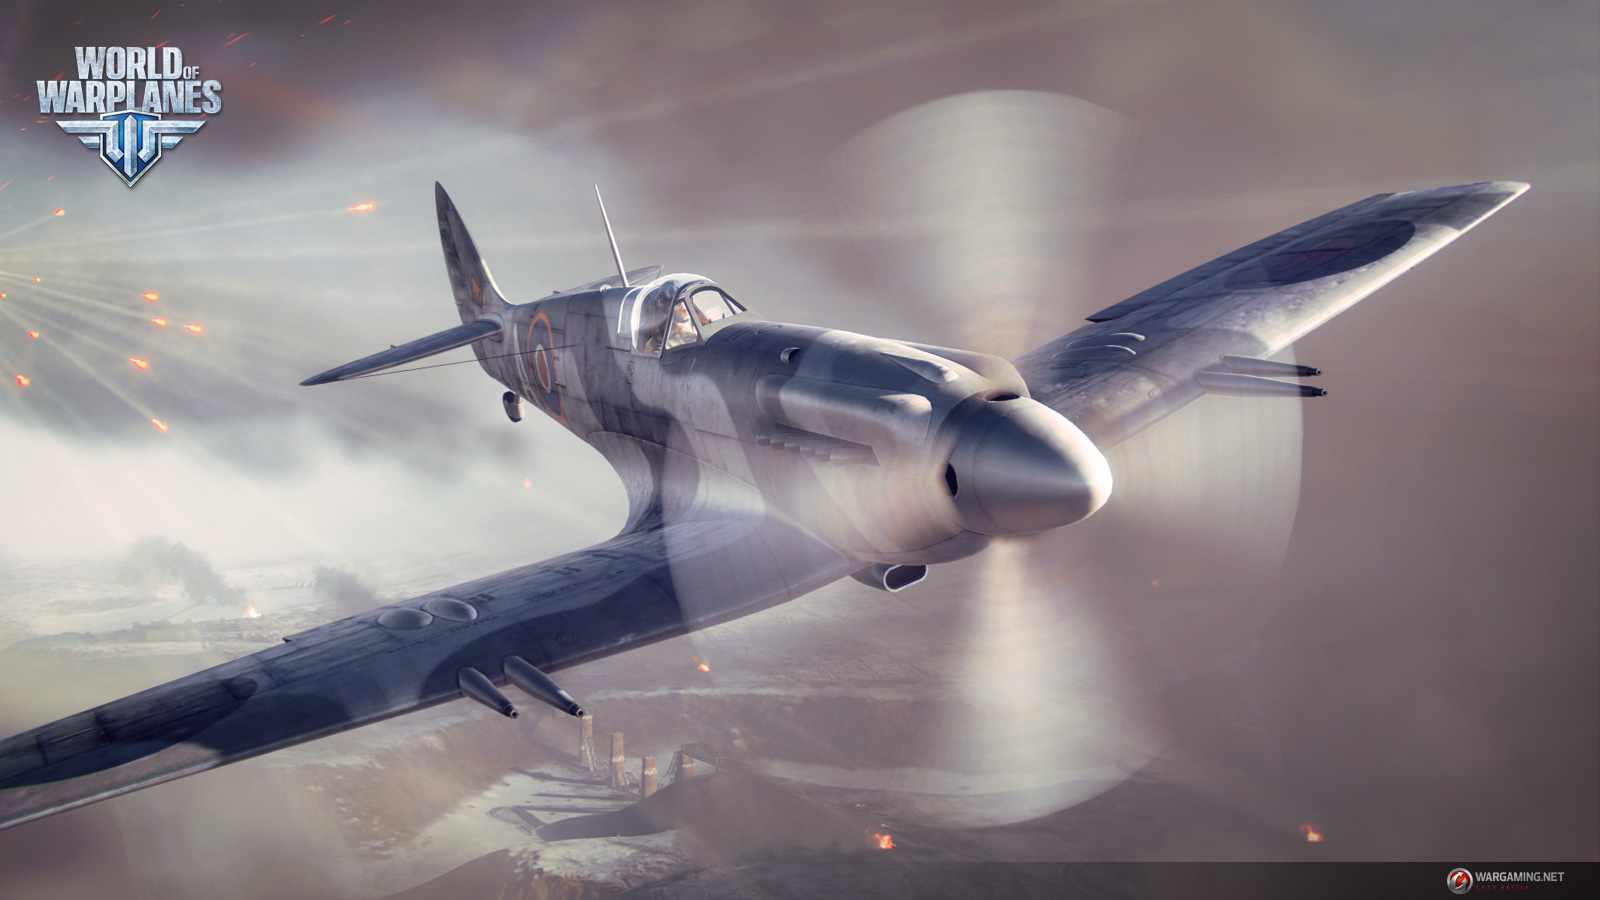 High Resolution Wallpaper | World Of Warplanes 1600x900 px